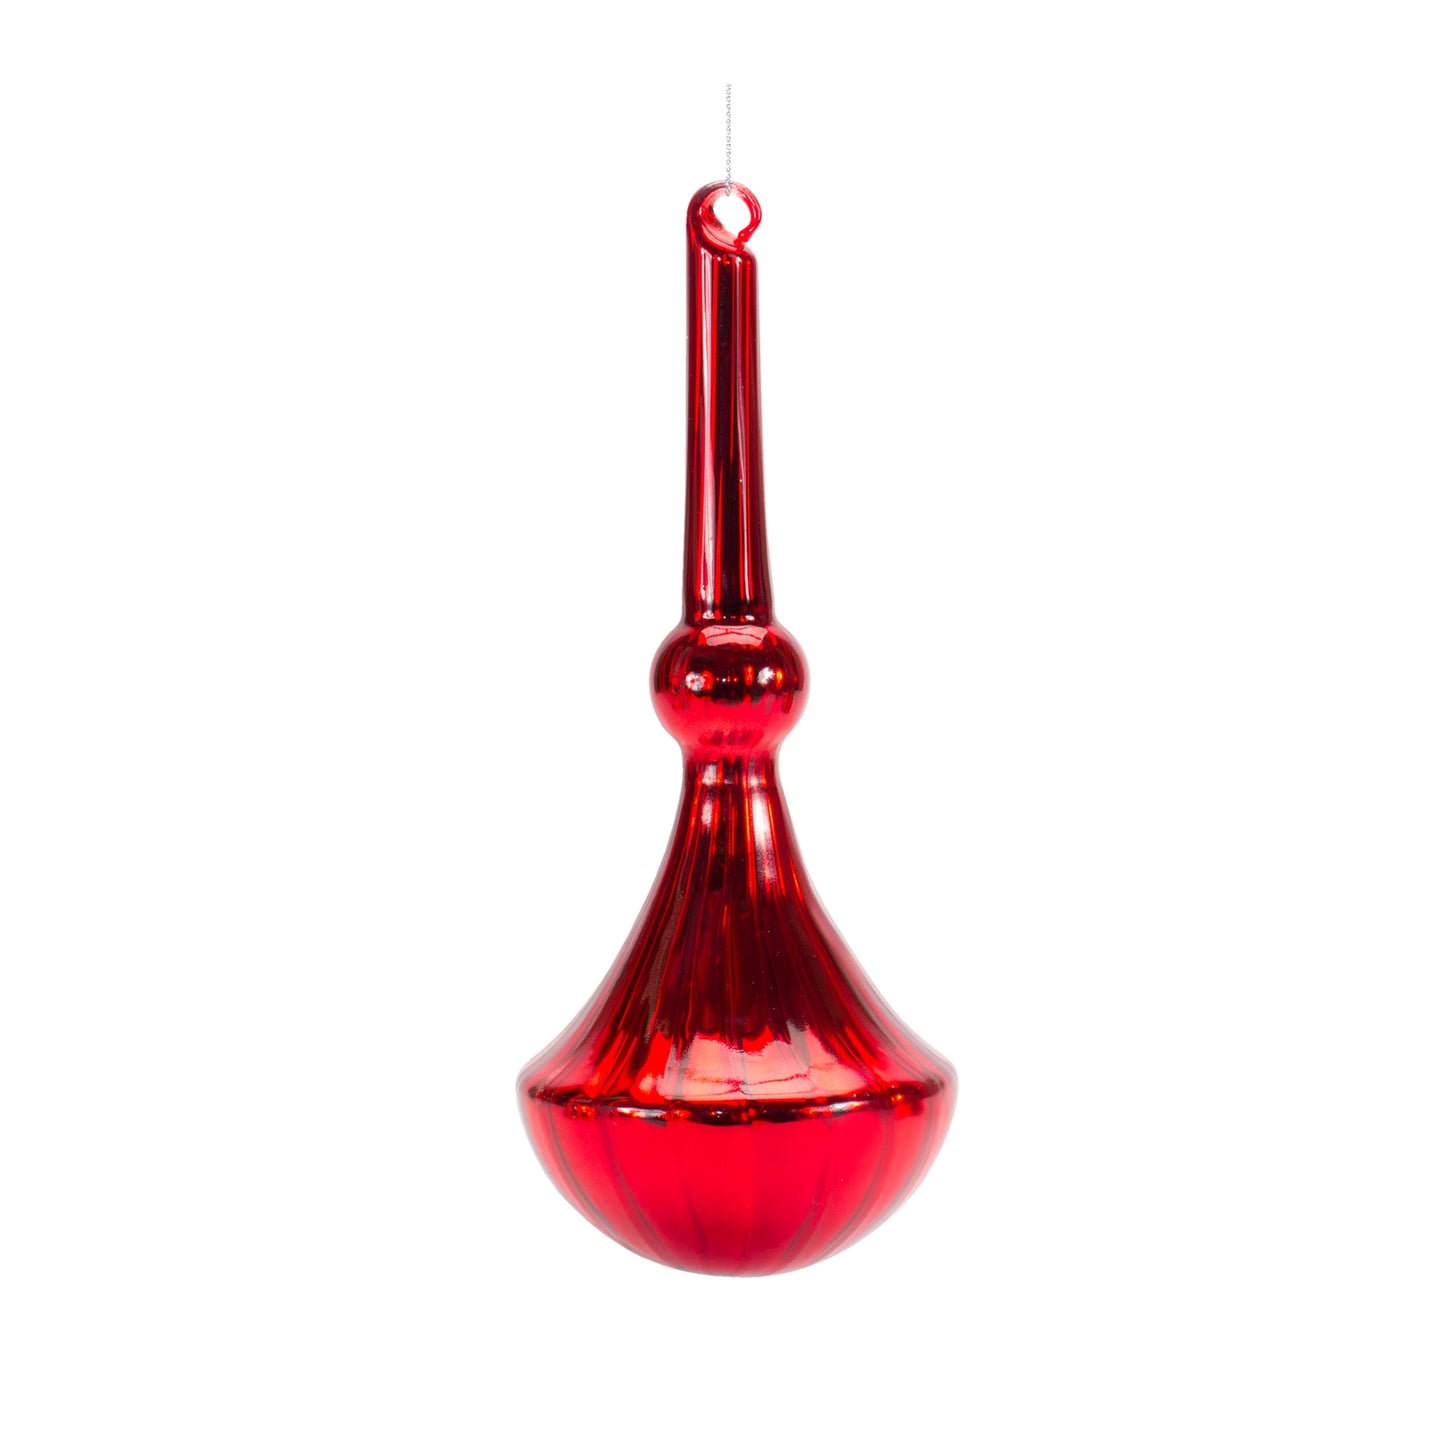 Red Drop Ornament Set Of 6